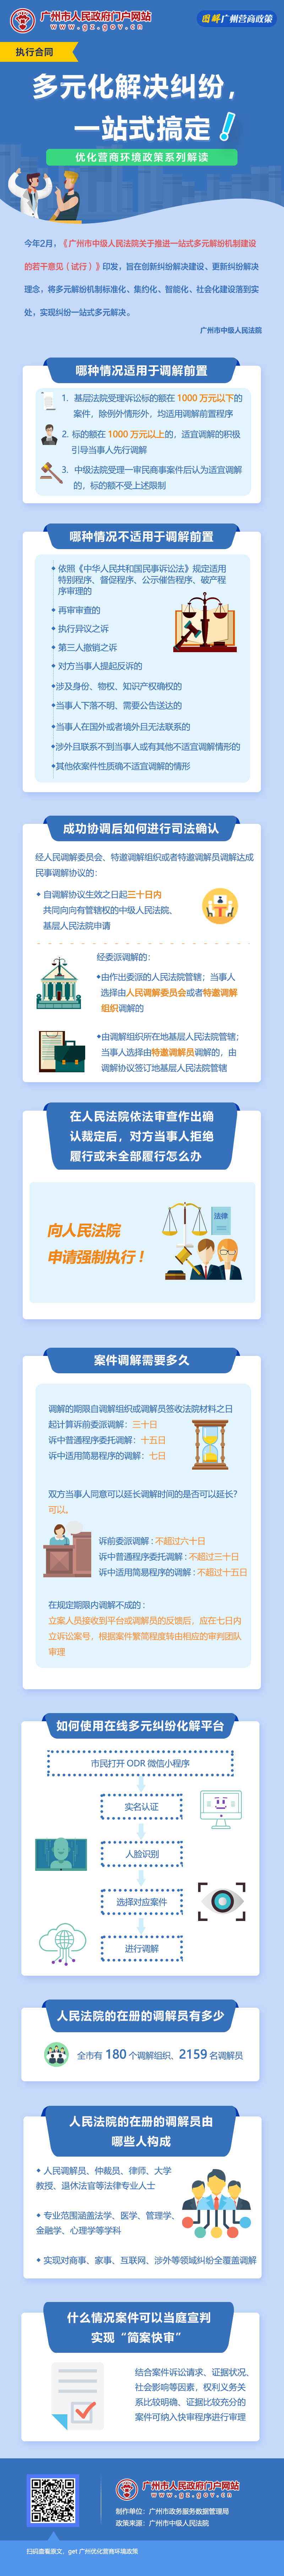 18广州市中级人民法院关于推进一站式多元解纷机制建设的若干意见(试行).jpg